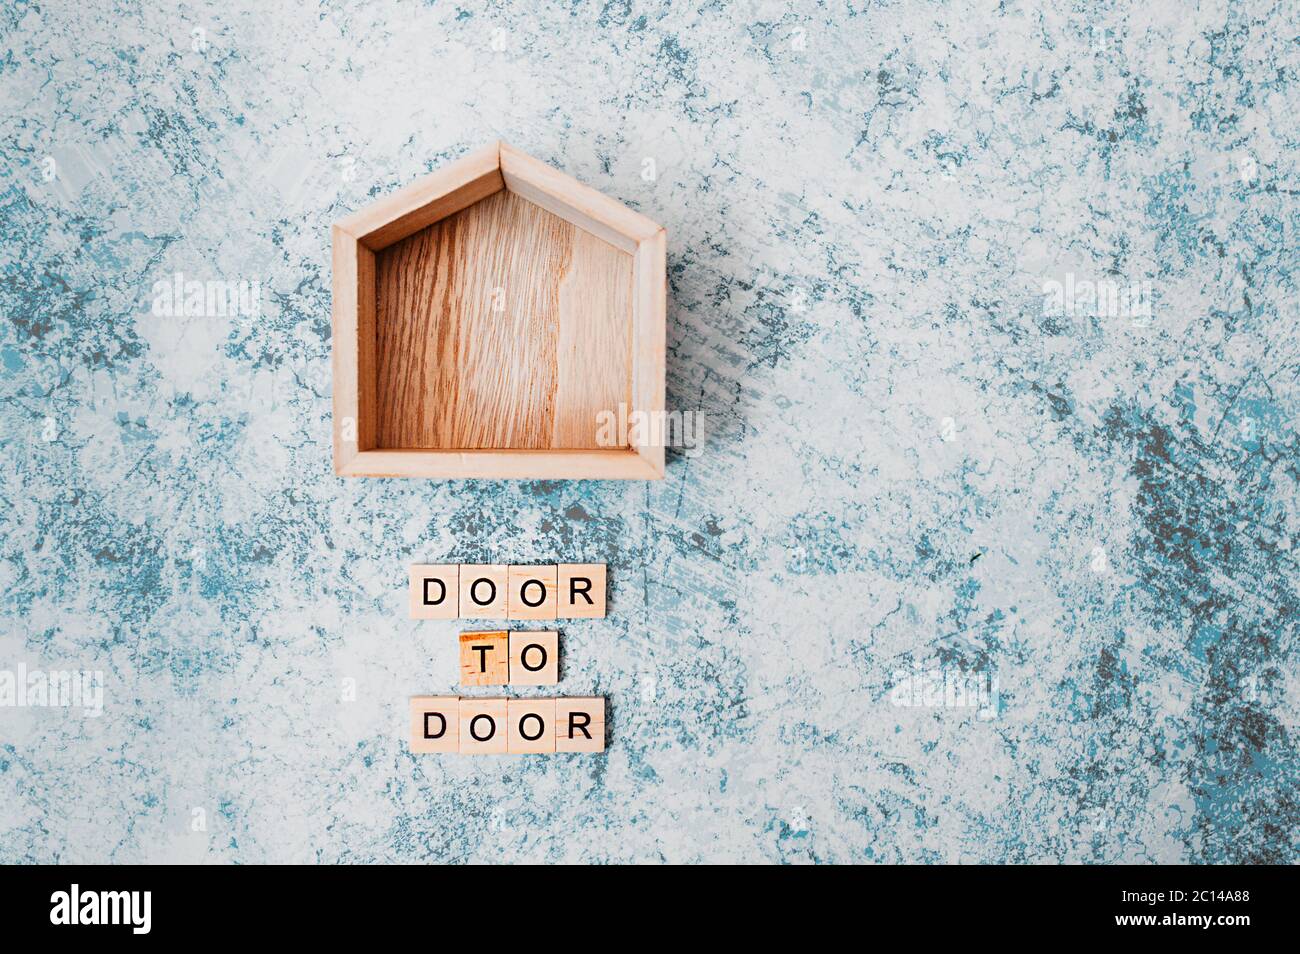 Holzdekor kleines Haus mit der Aufschrift Tür zu Tür aus hölzernen Buchstaben auf grau-blauem Zementhintergrund. Kontaktlose Lieferung und soziale distanci Stockfoto